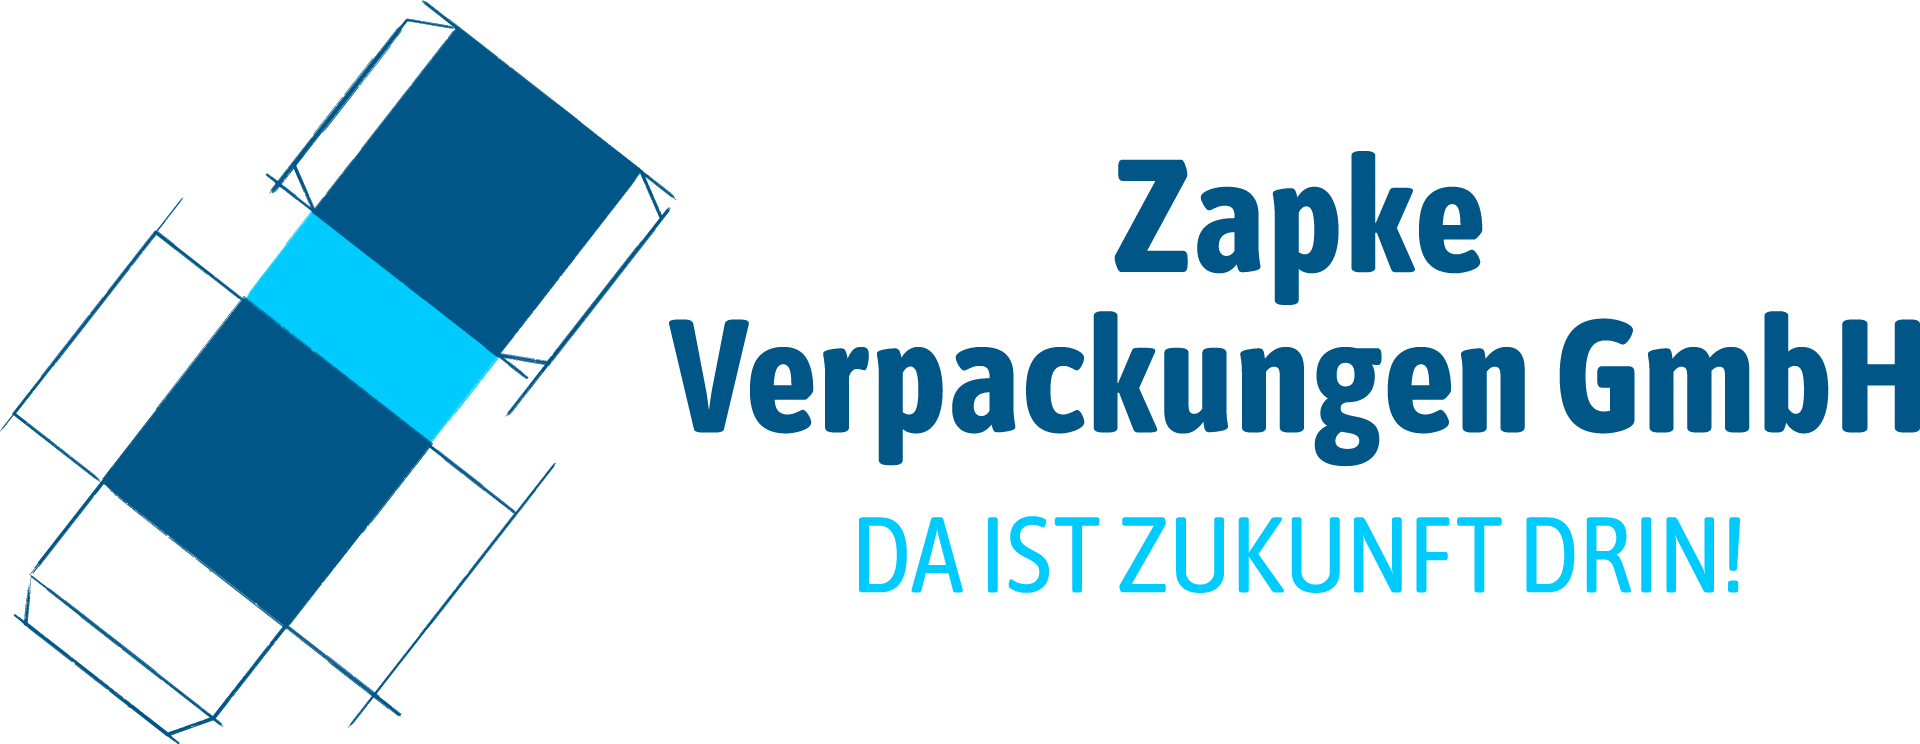 Wir sind dabei! Zapke Verpackungen GmbH beim Lüneburger Firmenlauf